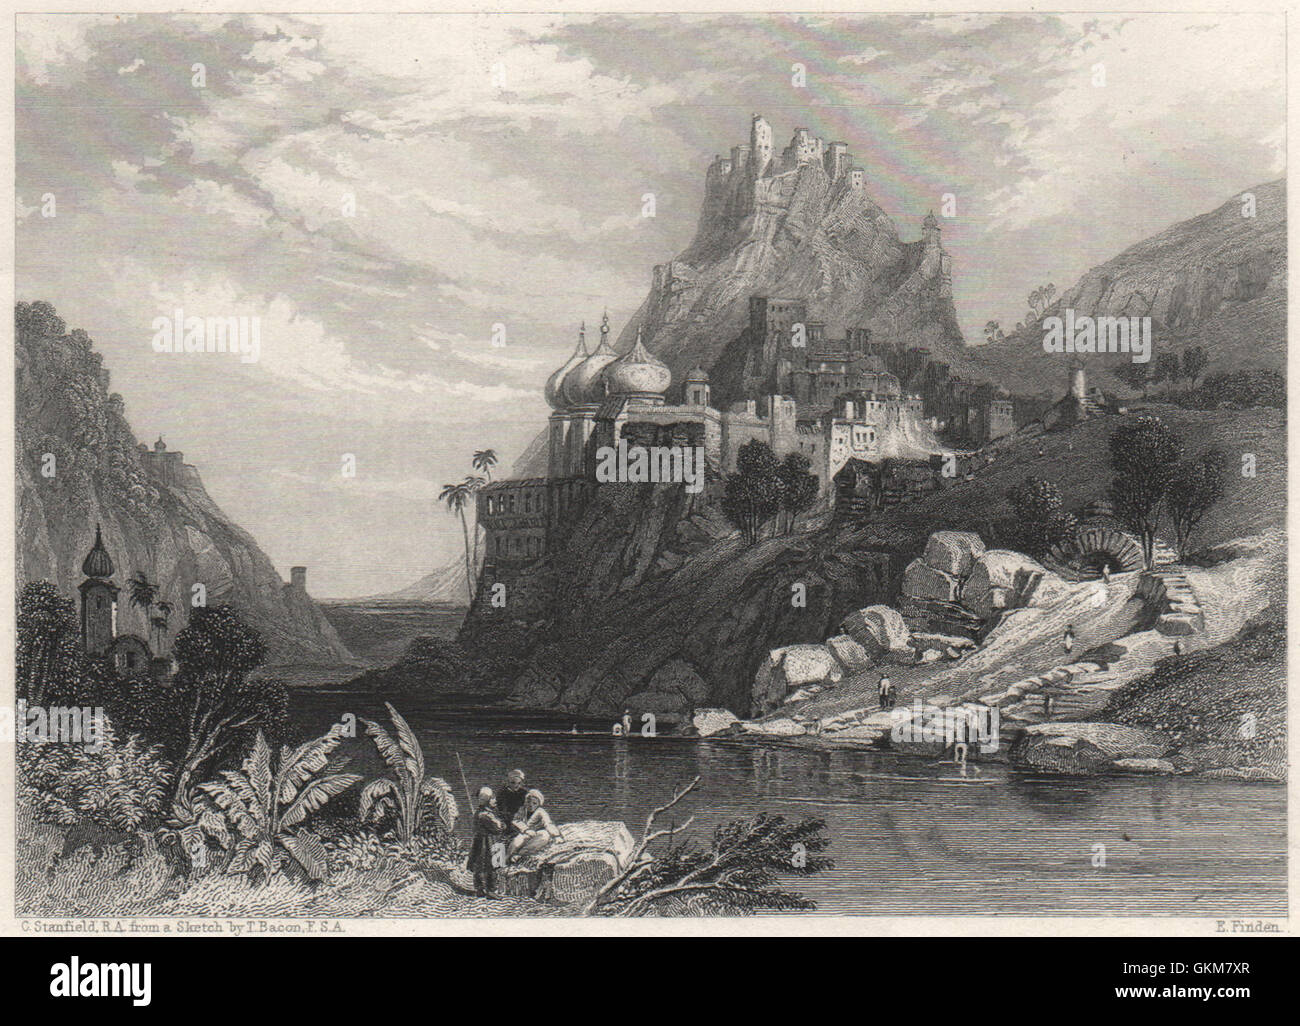 Rovine a Etawah, causata da un combattimento tra Krishna e Kali. India, 1840 Foto Stock